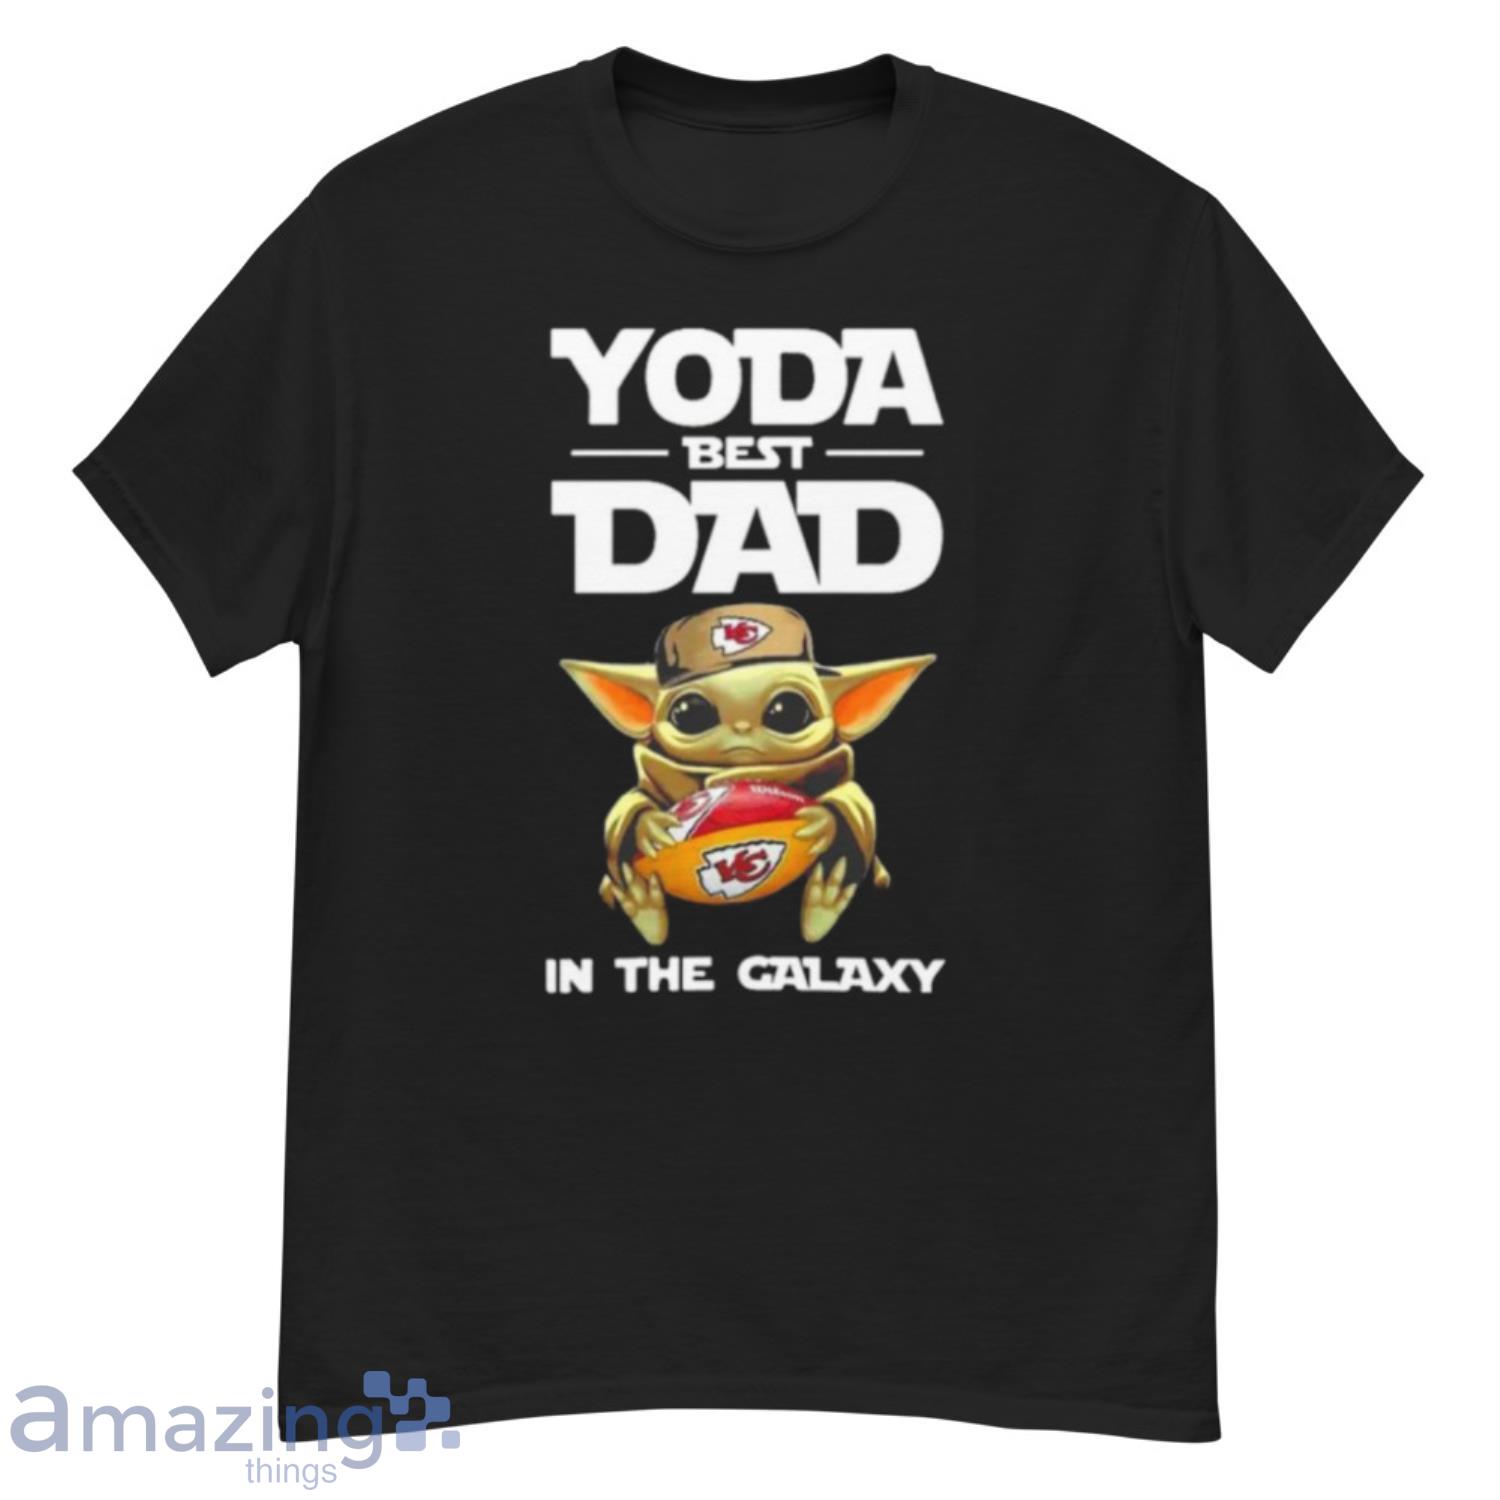 Yoda Best Dad In The Galaxy Kansas City Chiefs Football NFL Shirt - G500 Men’s Classic T-Shirt